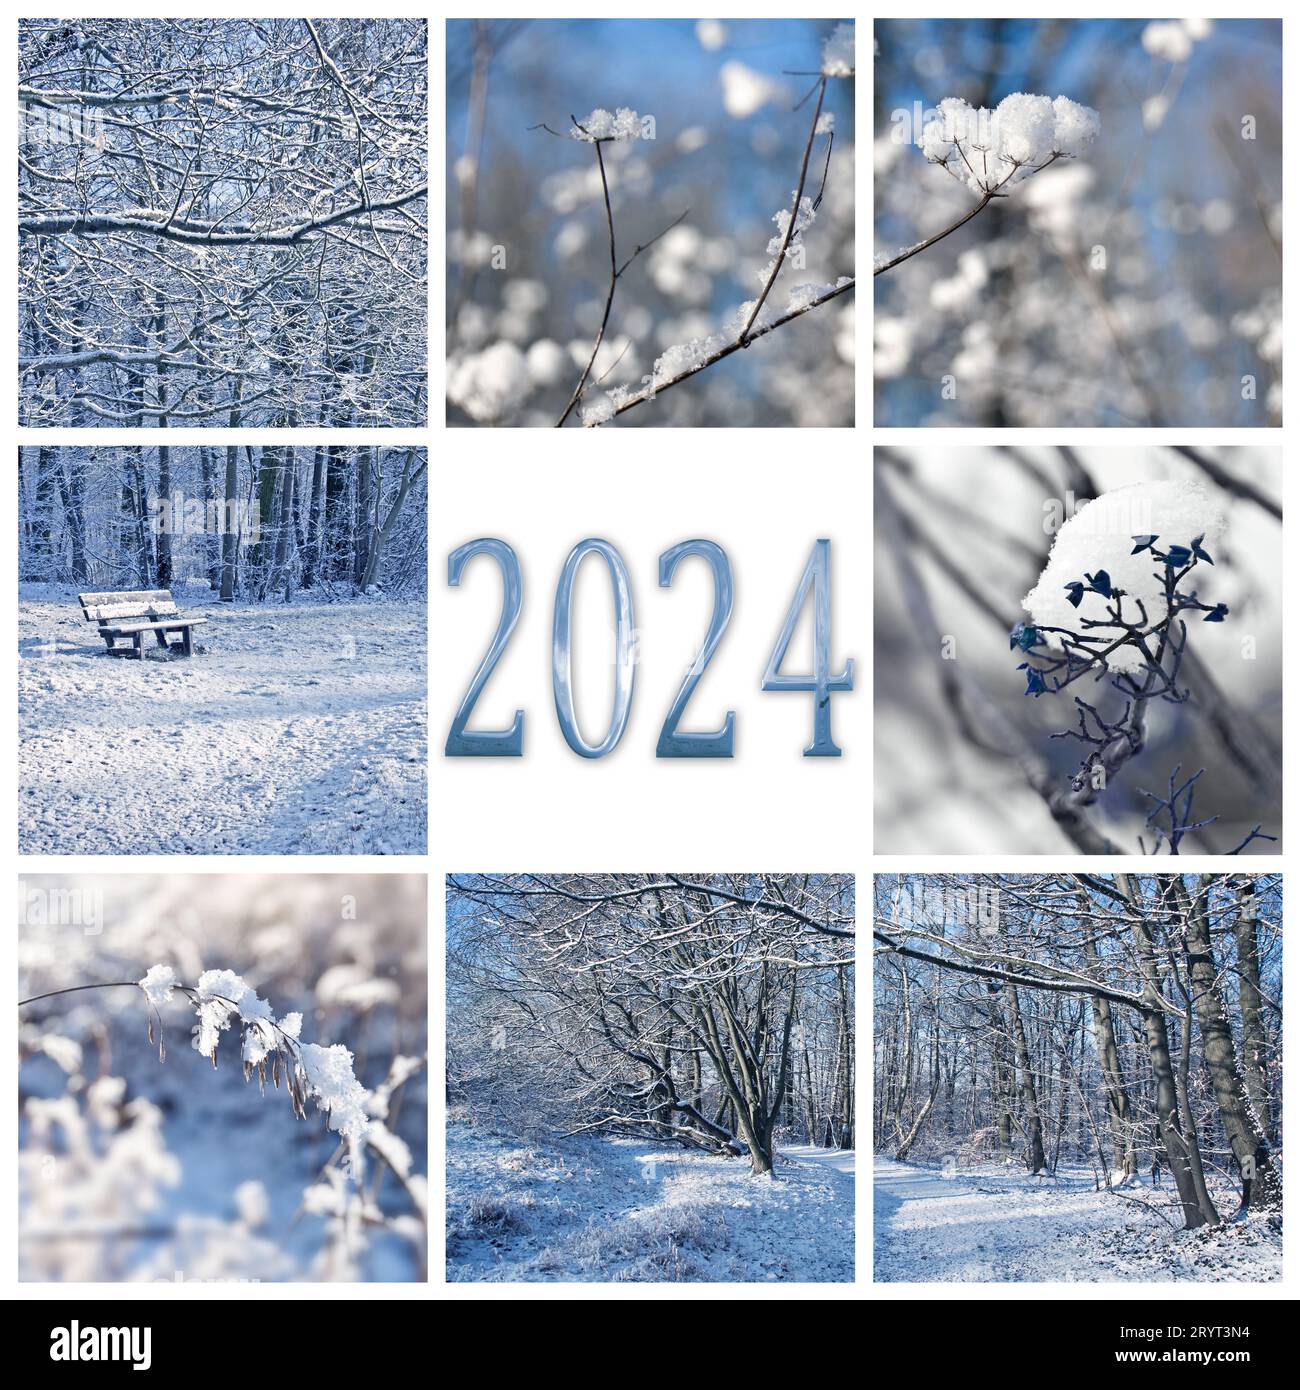 2024, nieve y paisajes de invierno, tarjeta de felicitación cuadrada de año nuevo Foto de stock